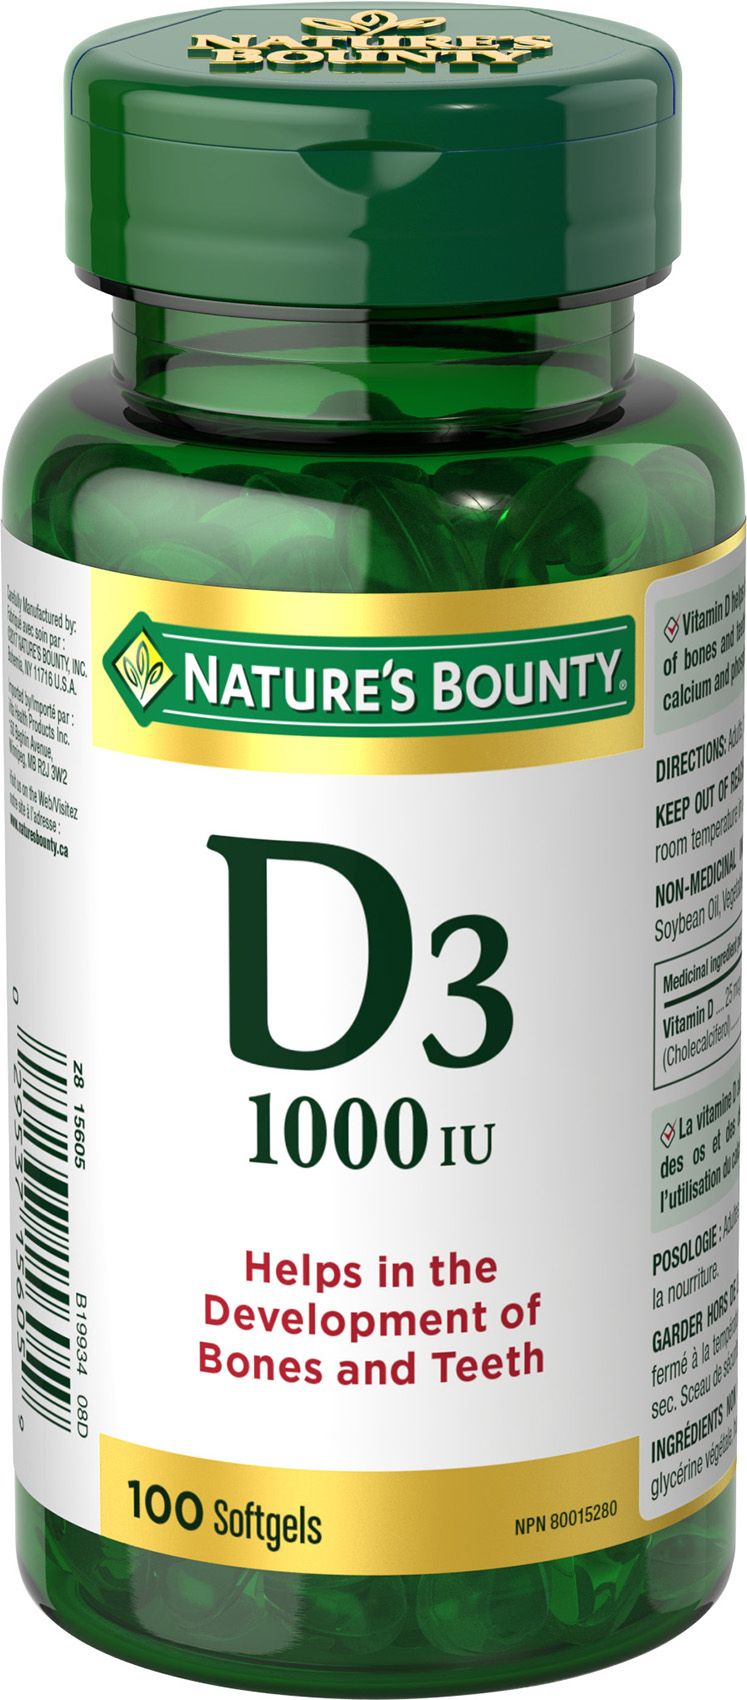 Nature's Bounty Vitamin D3 Softgels